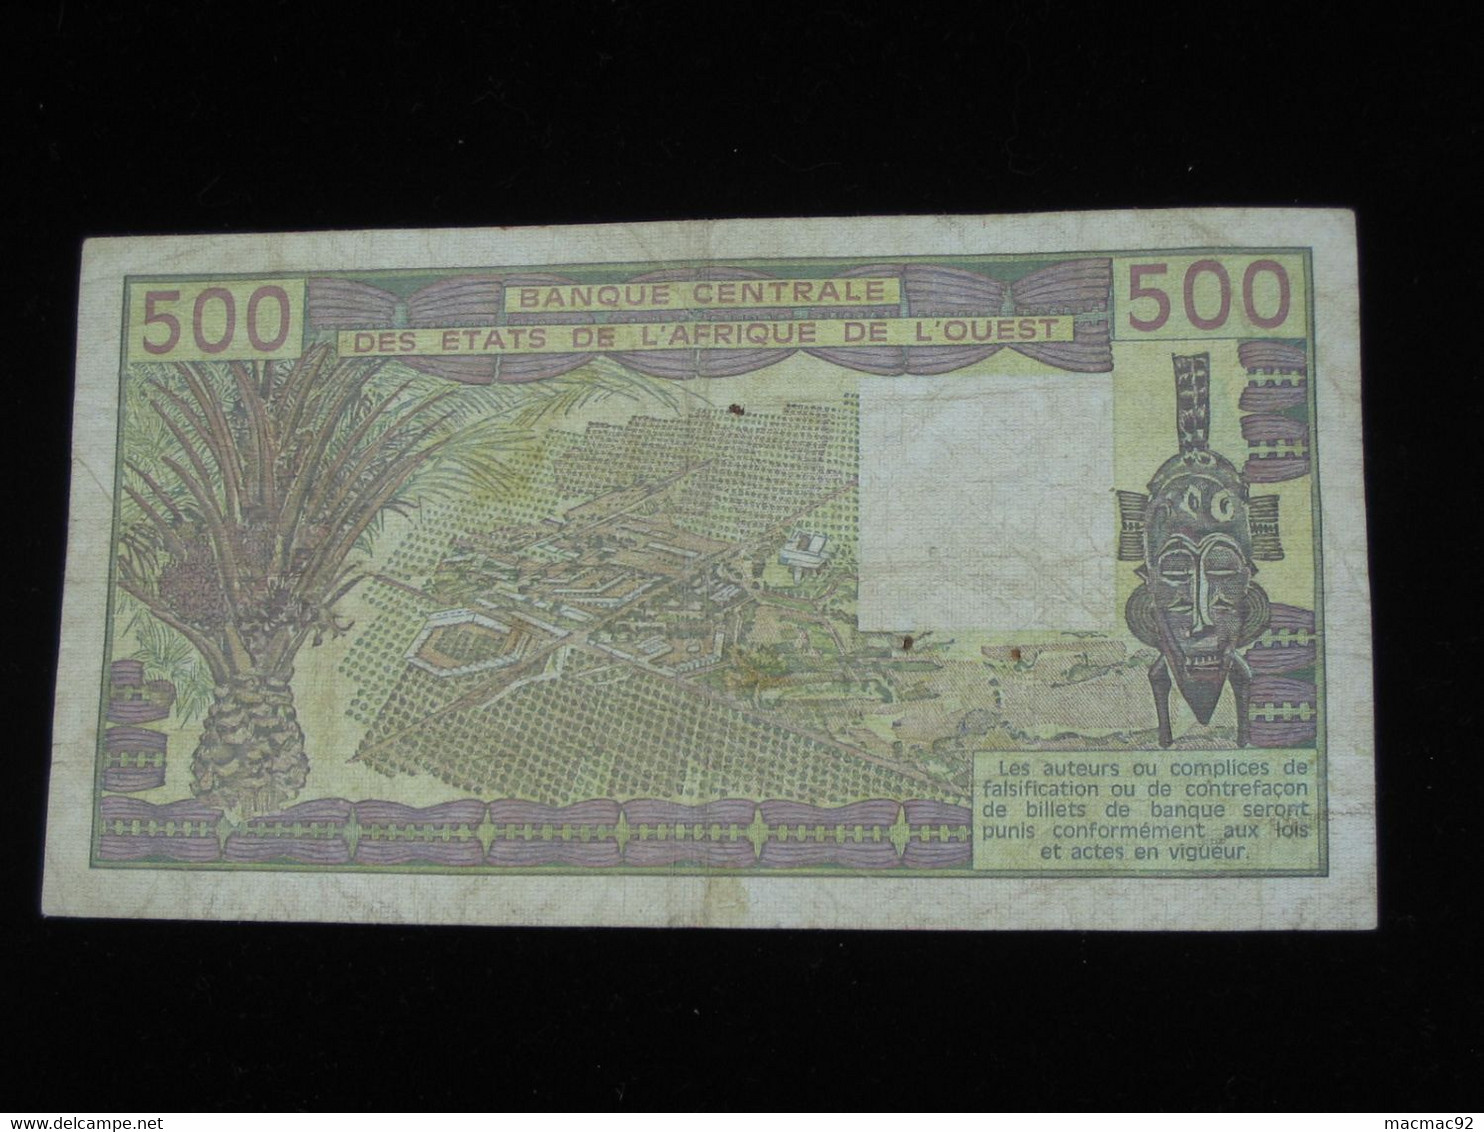 SENEGAL - 500 Francs 1984 K - Banque Centrale Des Etats De L'Afrique De L'Ouest  **** EN ACHAT IMMEDIAT **** - Senegal